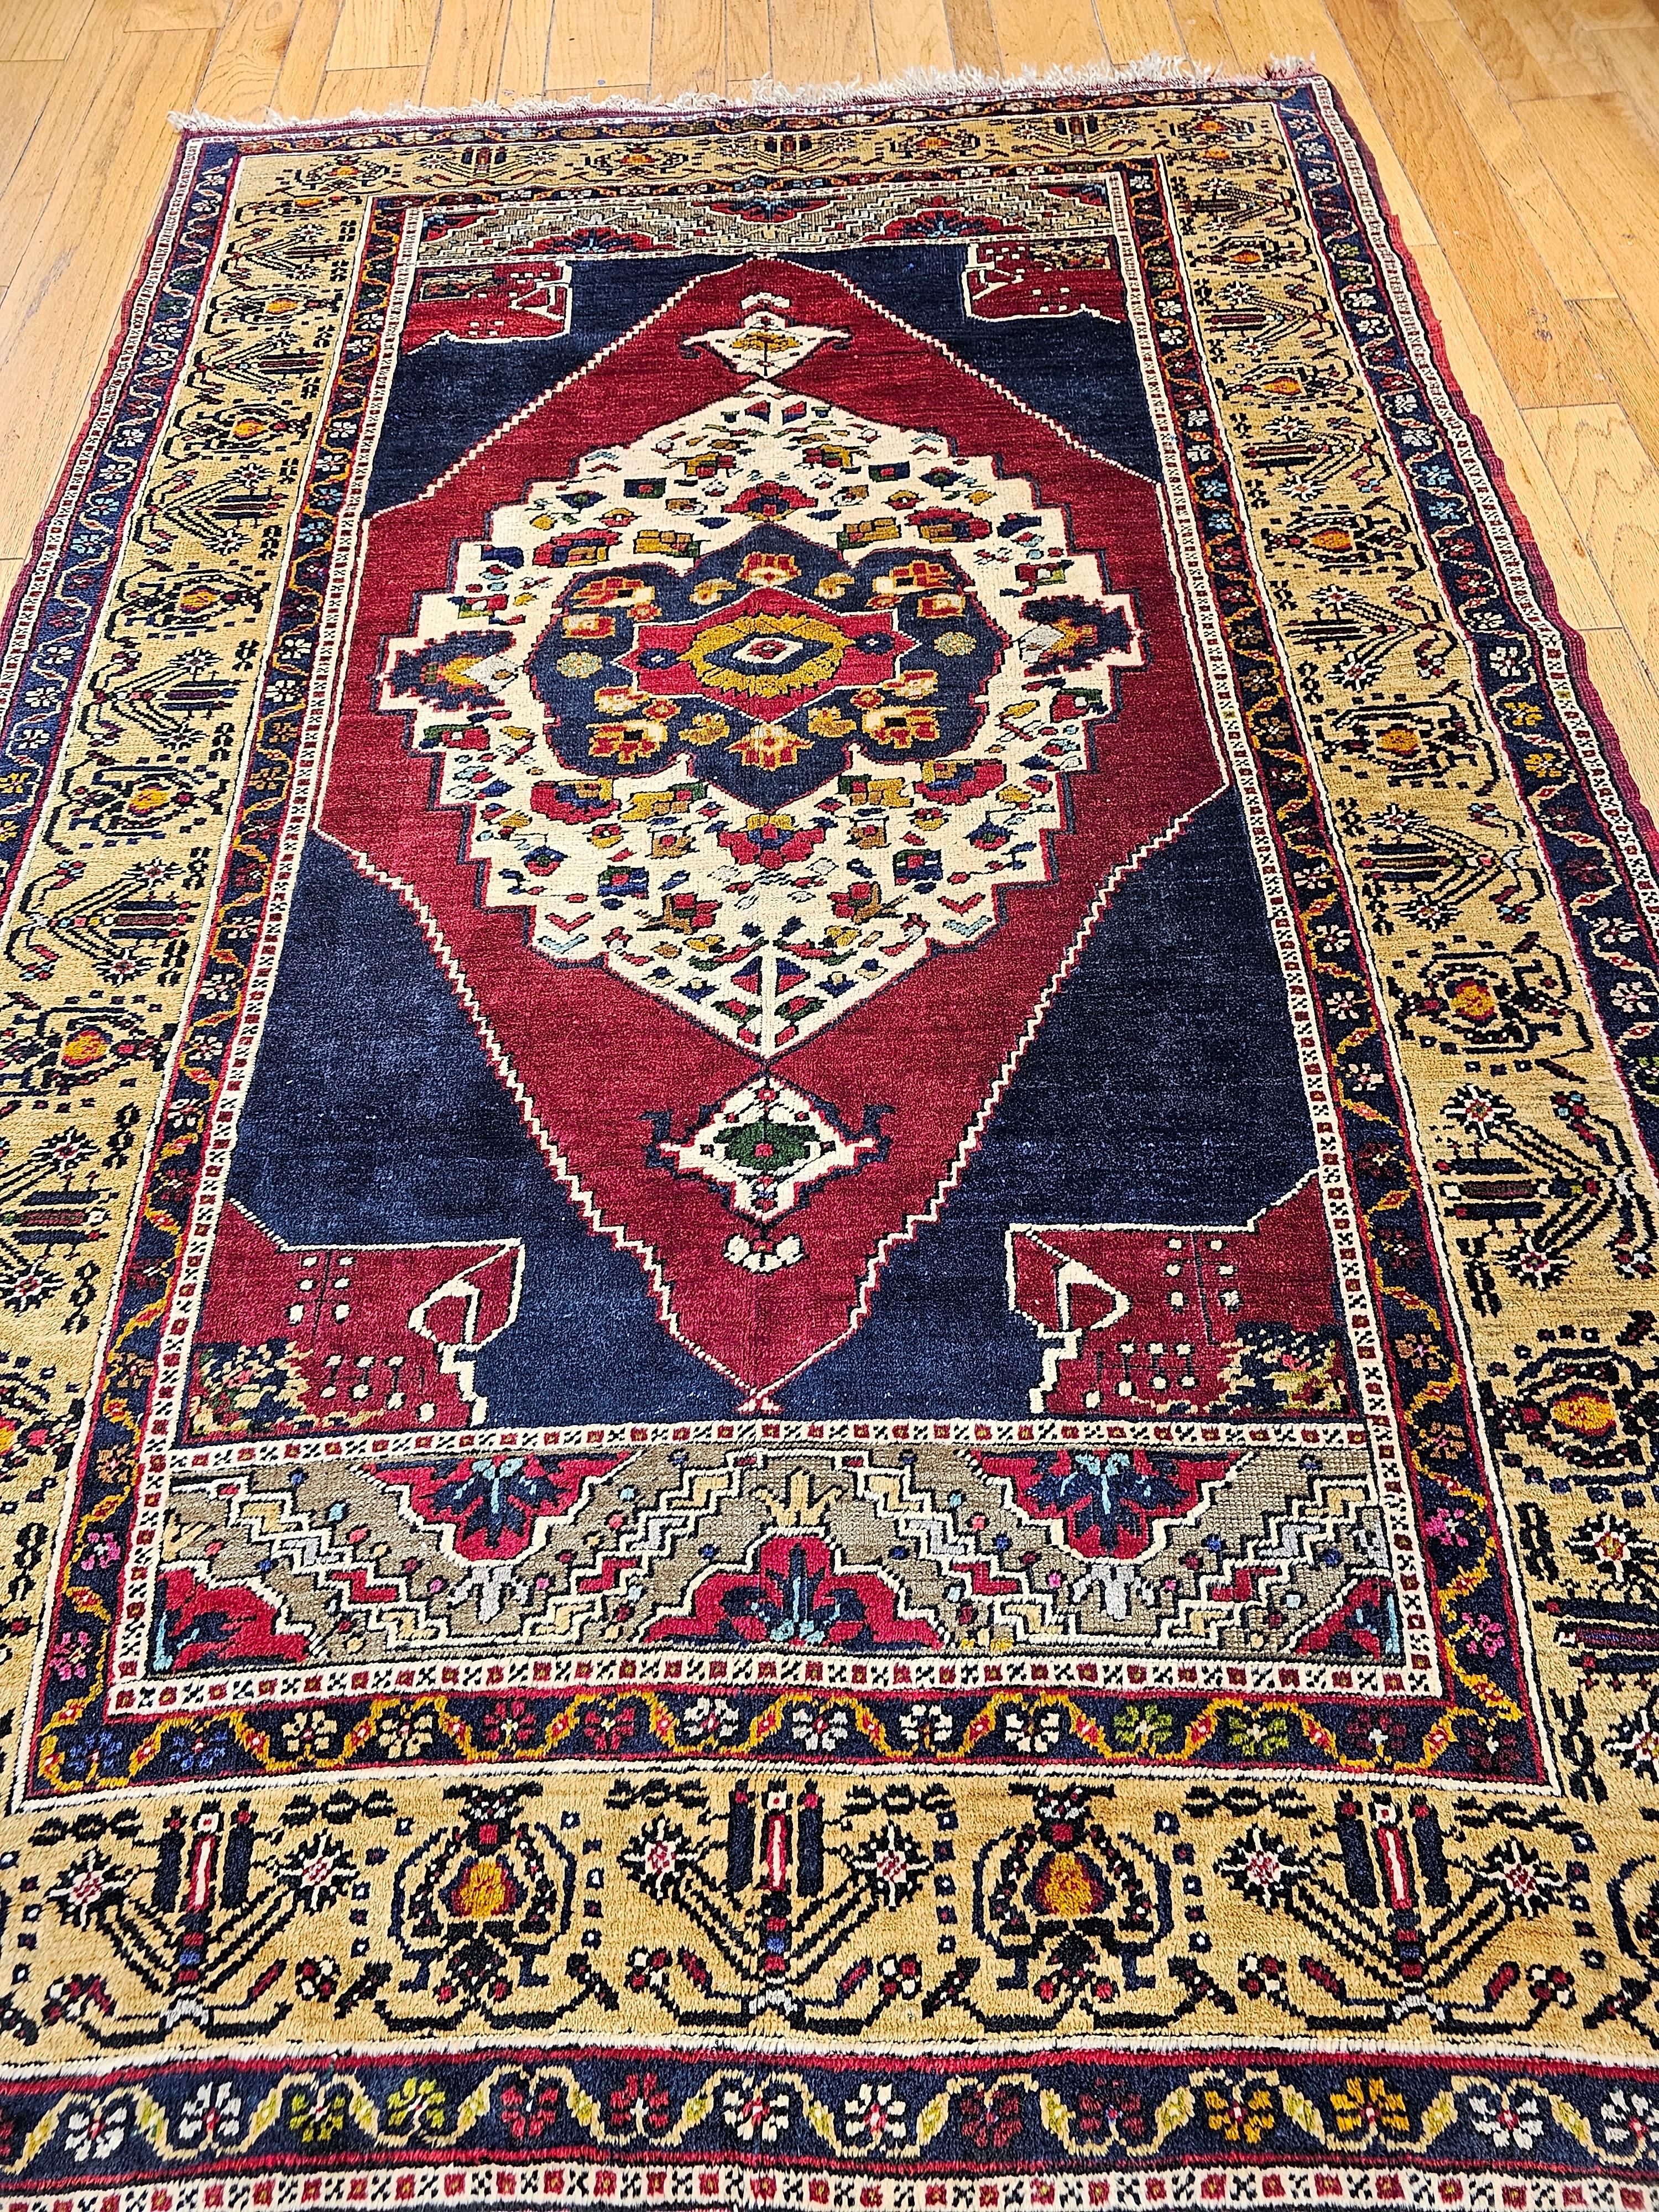 Magnifique tapis turc d'Anatolie noué à la main, de type Oushak, datant du deuxième quart des années 1900.  Le tapis a un fond bleu foncé et rouge qui contient les médaillons intérieurs et extérieurs.  La particularité de ce tapis est son magnifique